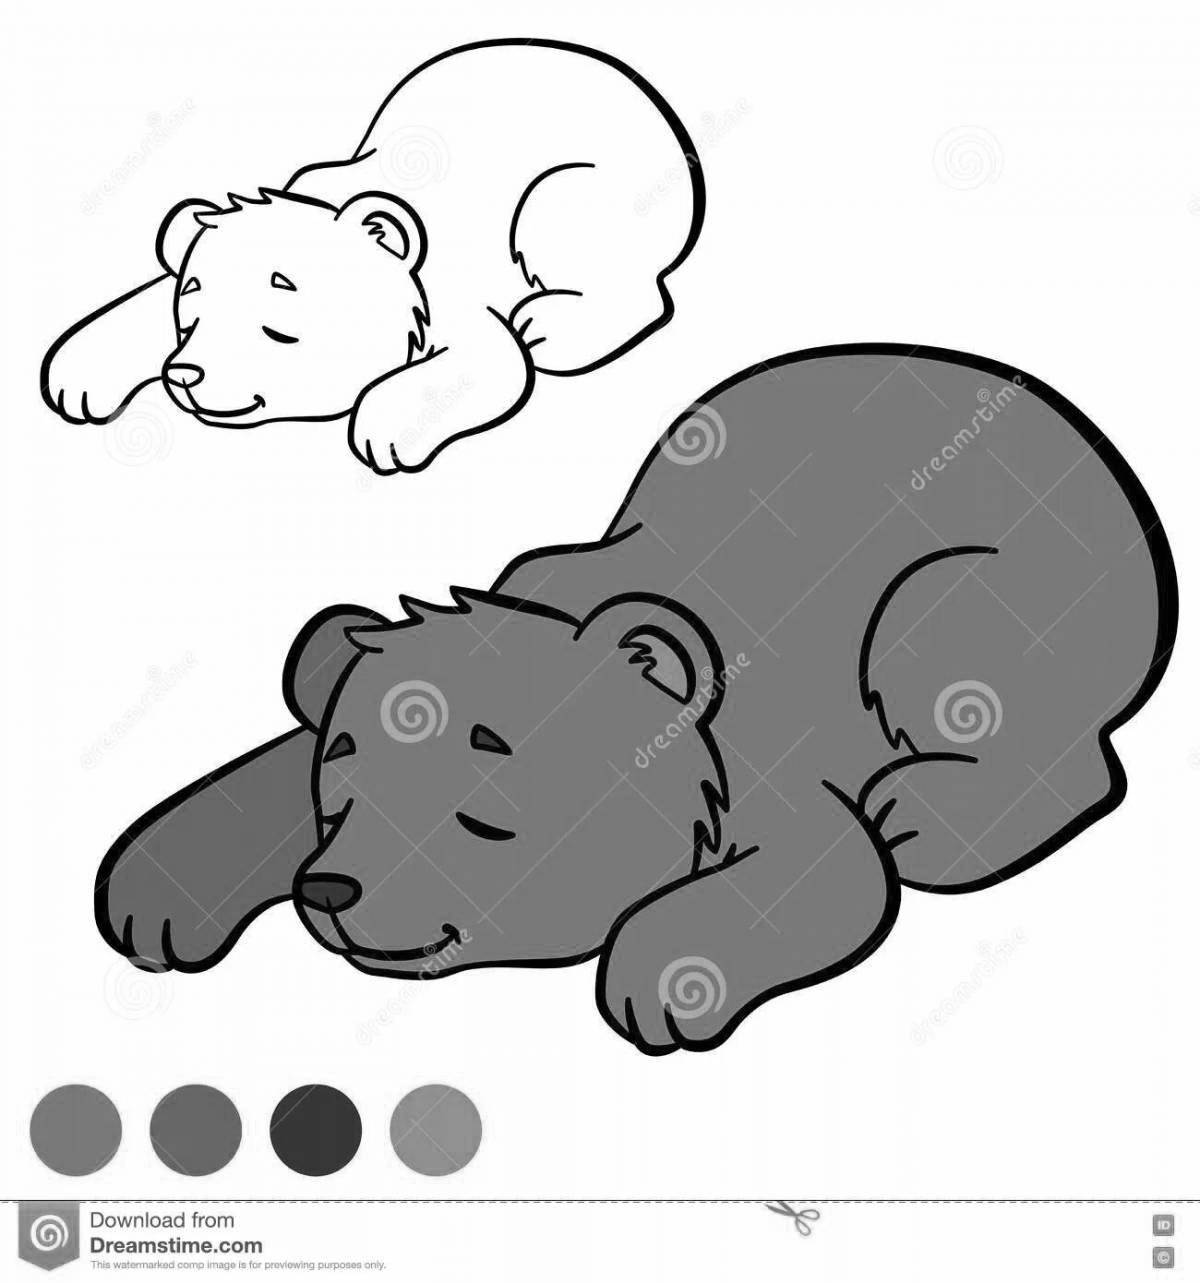 Чудесная раскраска «медвежья берлога» для детей 3-4 лет